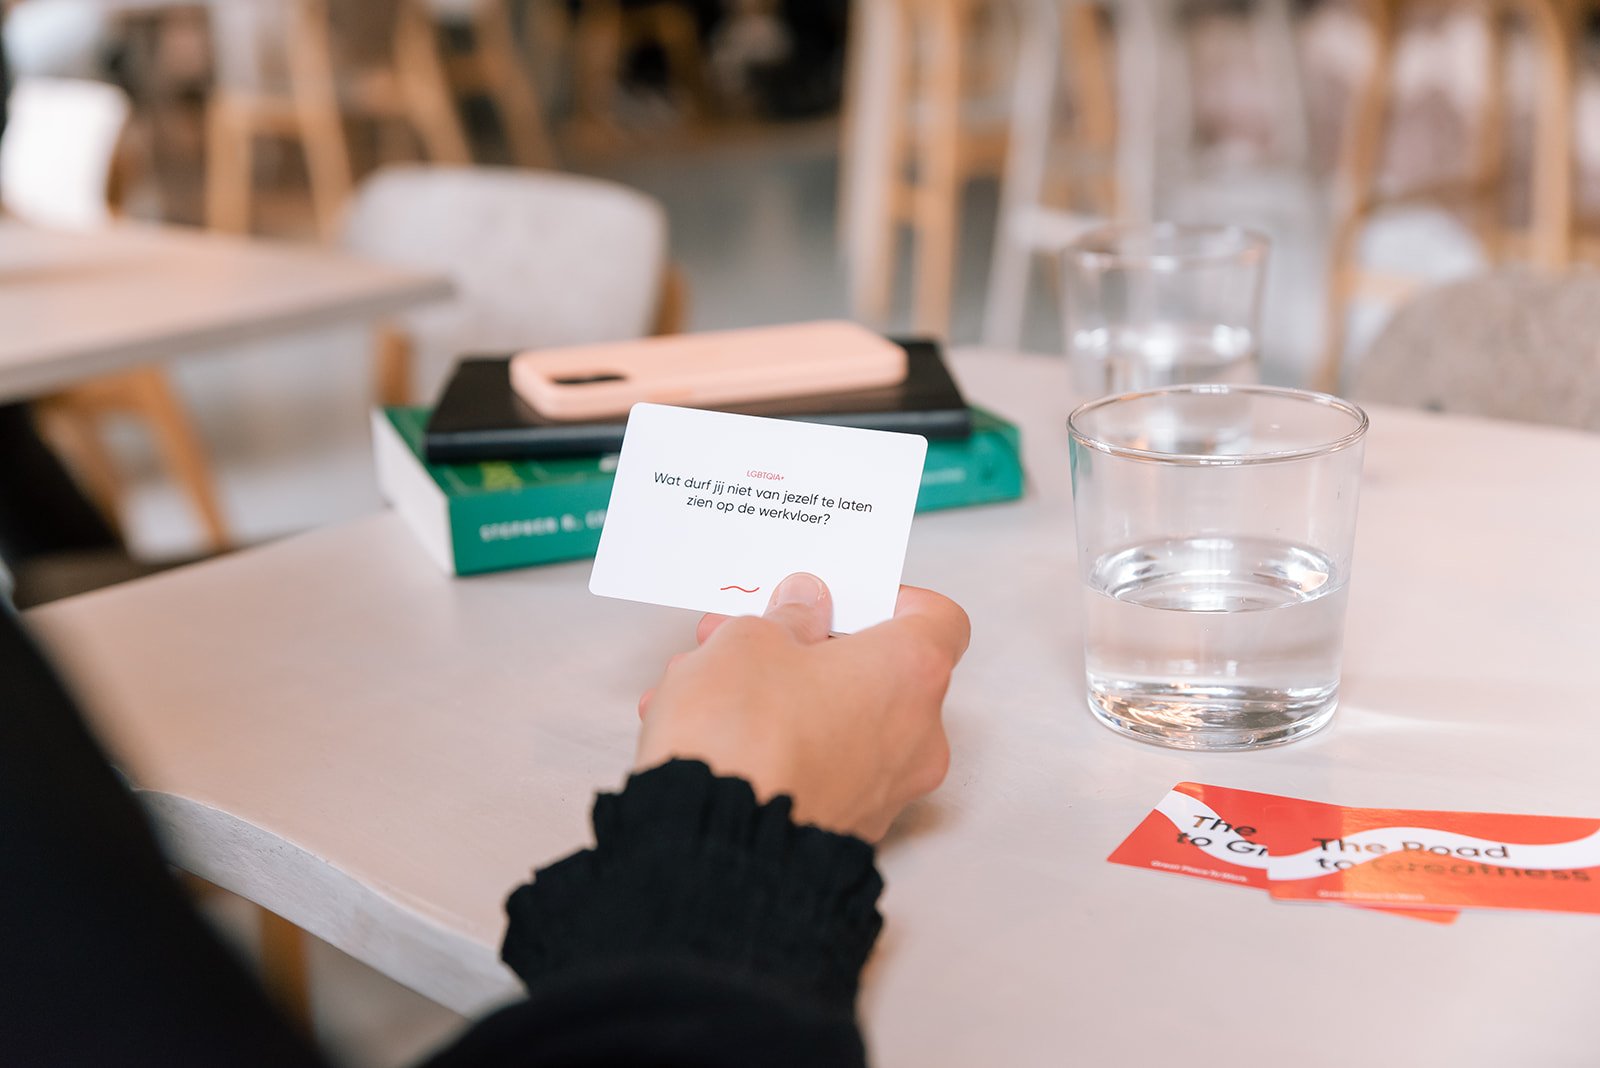 Great Conversations kaartspel over jezelf zijn op werk